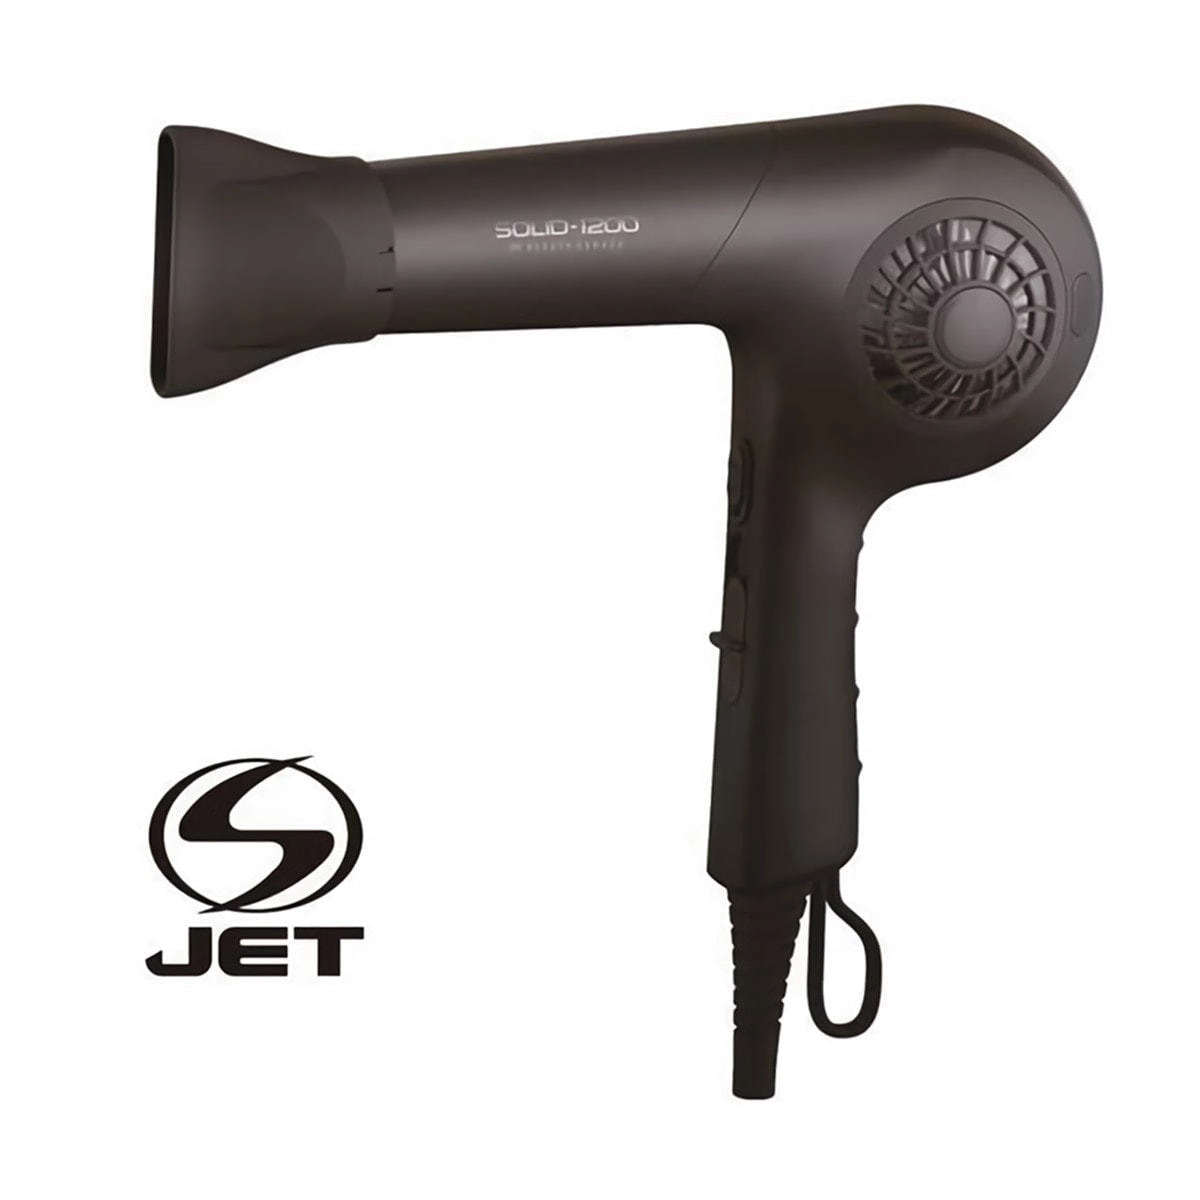 【S-JET認証取得】プロフェッショナルヘアドライヤーSOLID-1200 （1200W） マットブラック